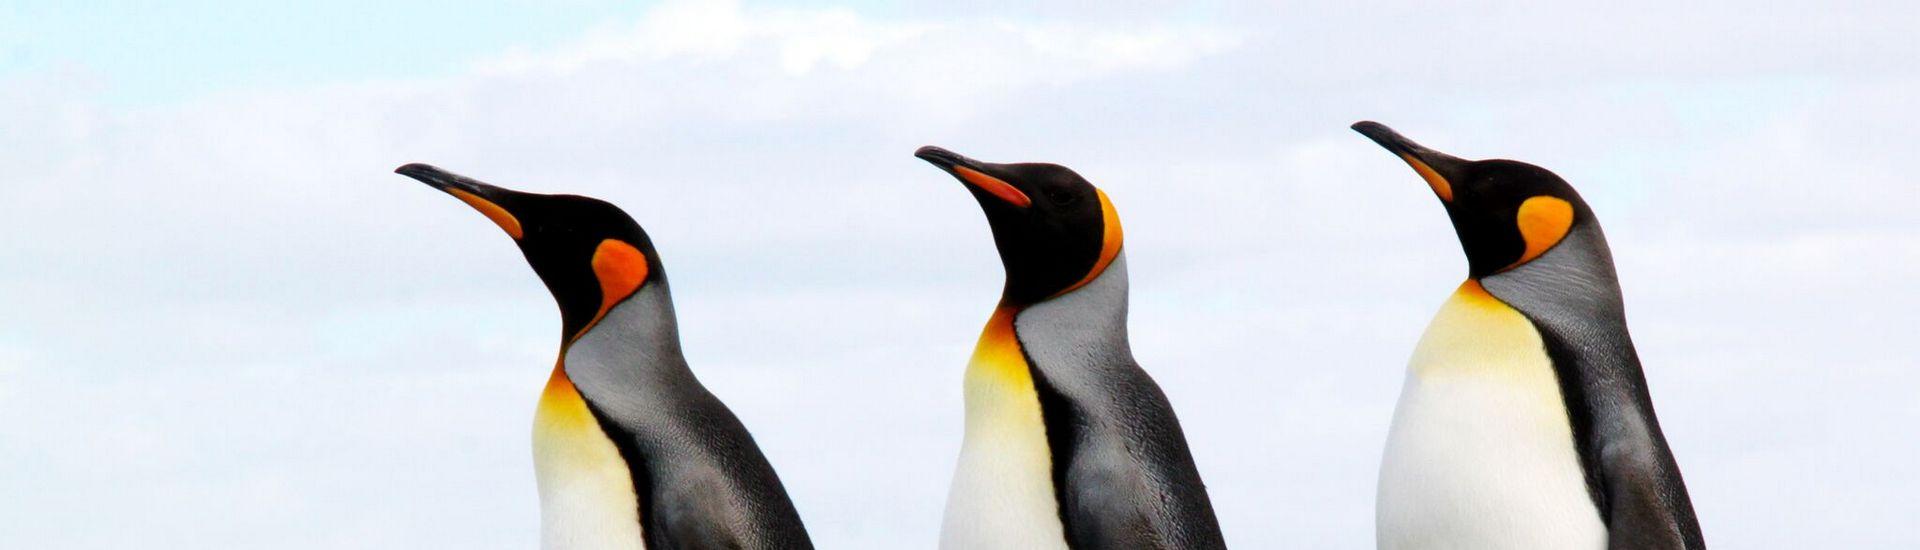 Falklandy - W królestwie pingwinów